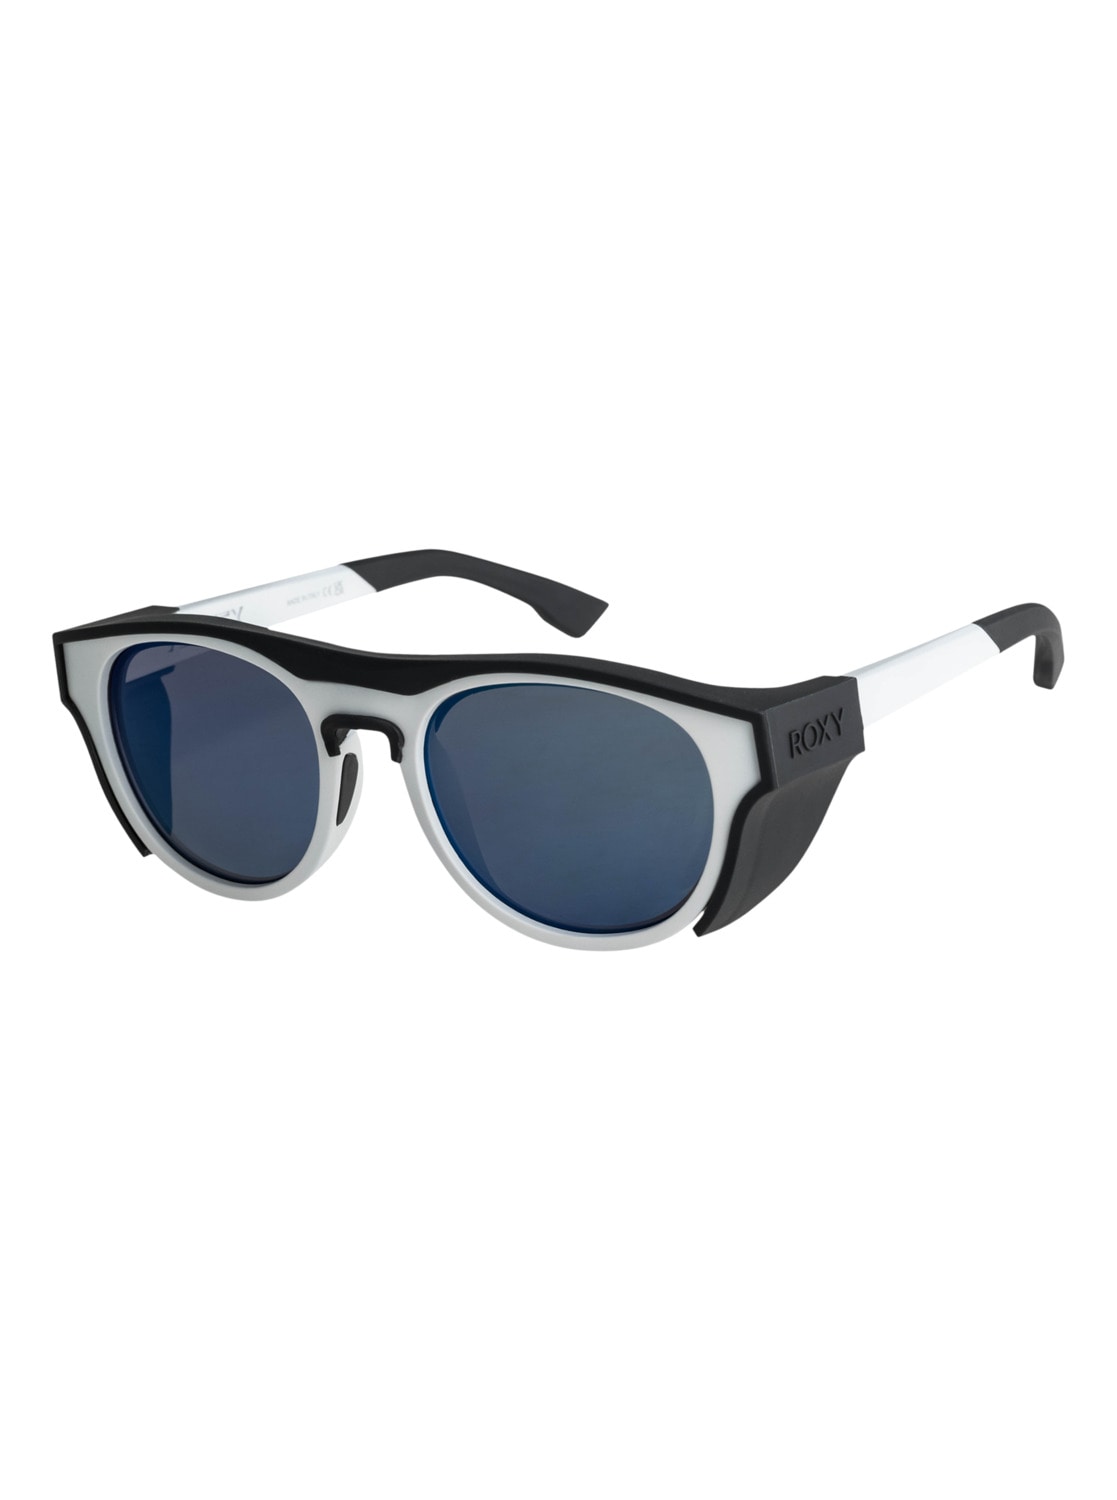 Sonnenbrillen Damen SALE & Outlet ▷ günstige Angebote | BAUR